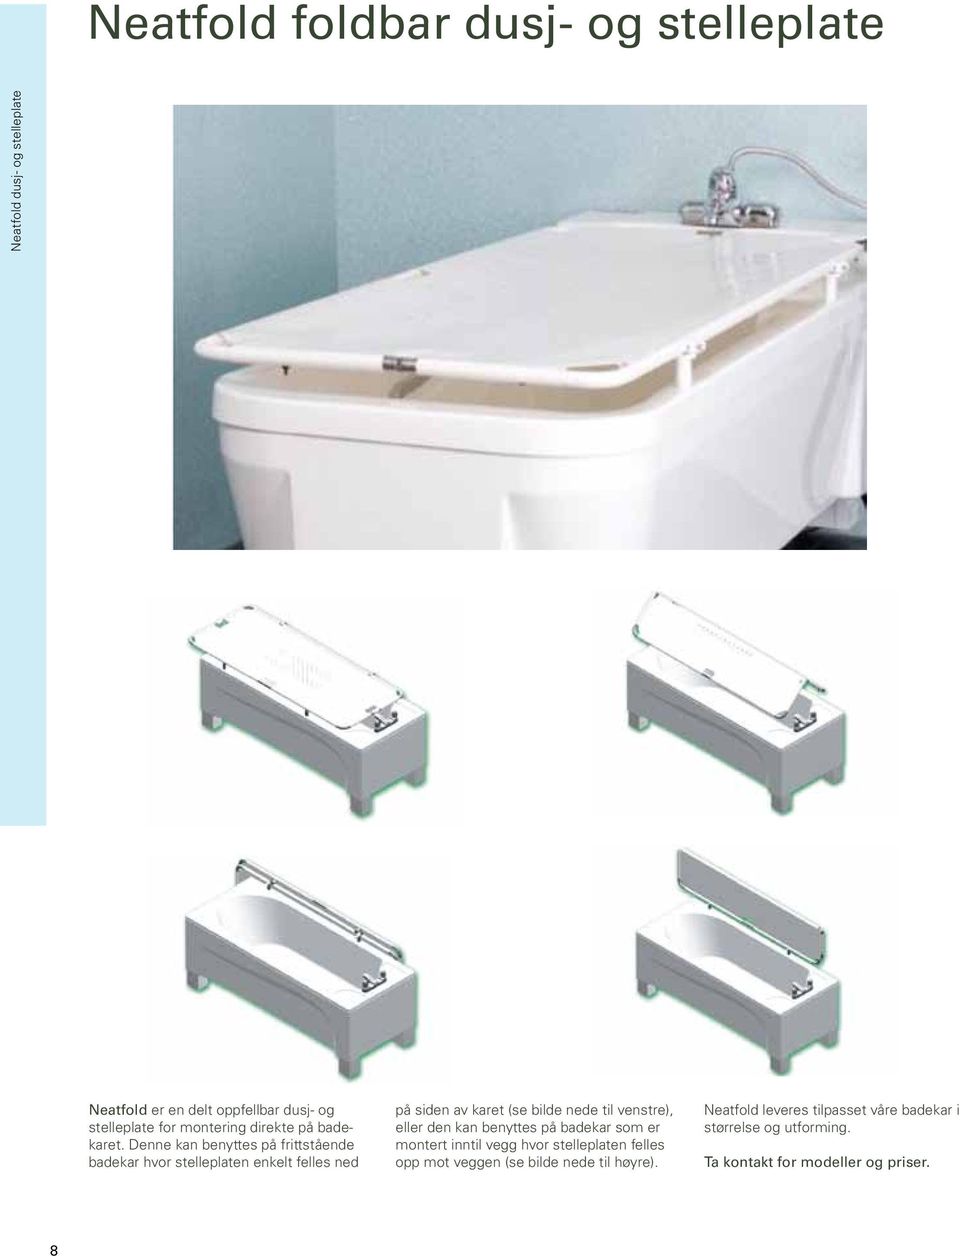 Denne kan benyttes på frittstående badekar hvor stelleplaten enkelt felles ned på siden av karet (se bilde nede til venstre),